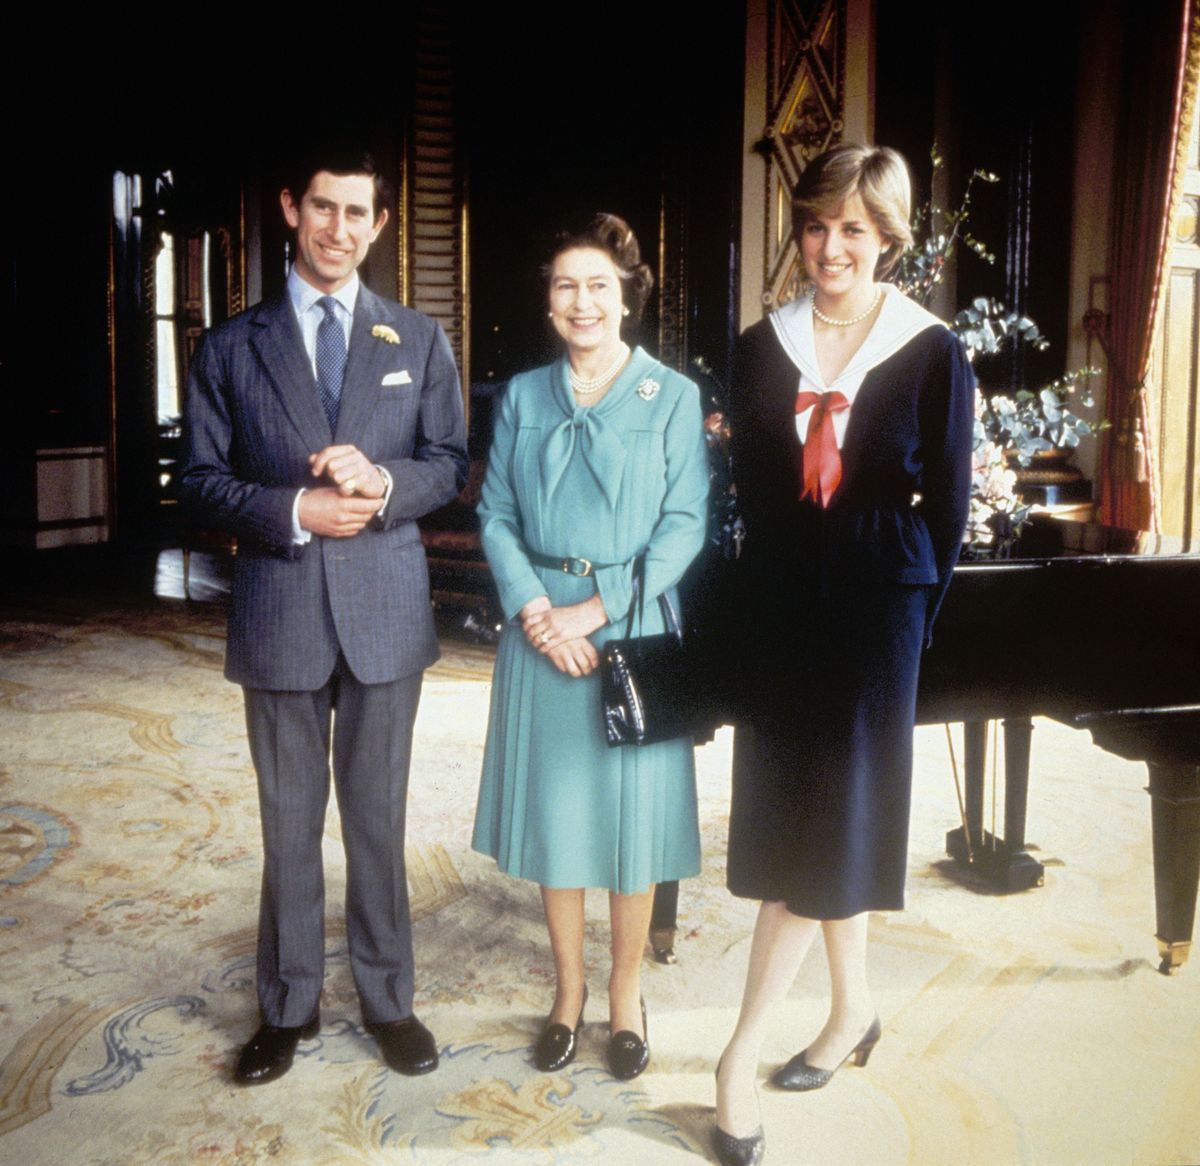 kraljica elizabeth ii s princem charlesom in njegovo zaročenko diano spencer 1961 1997 v Buckinghamski palači, 27. marec 1981 photo by fox photoshulton archivegetty images